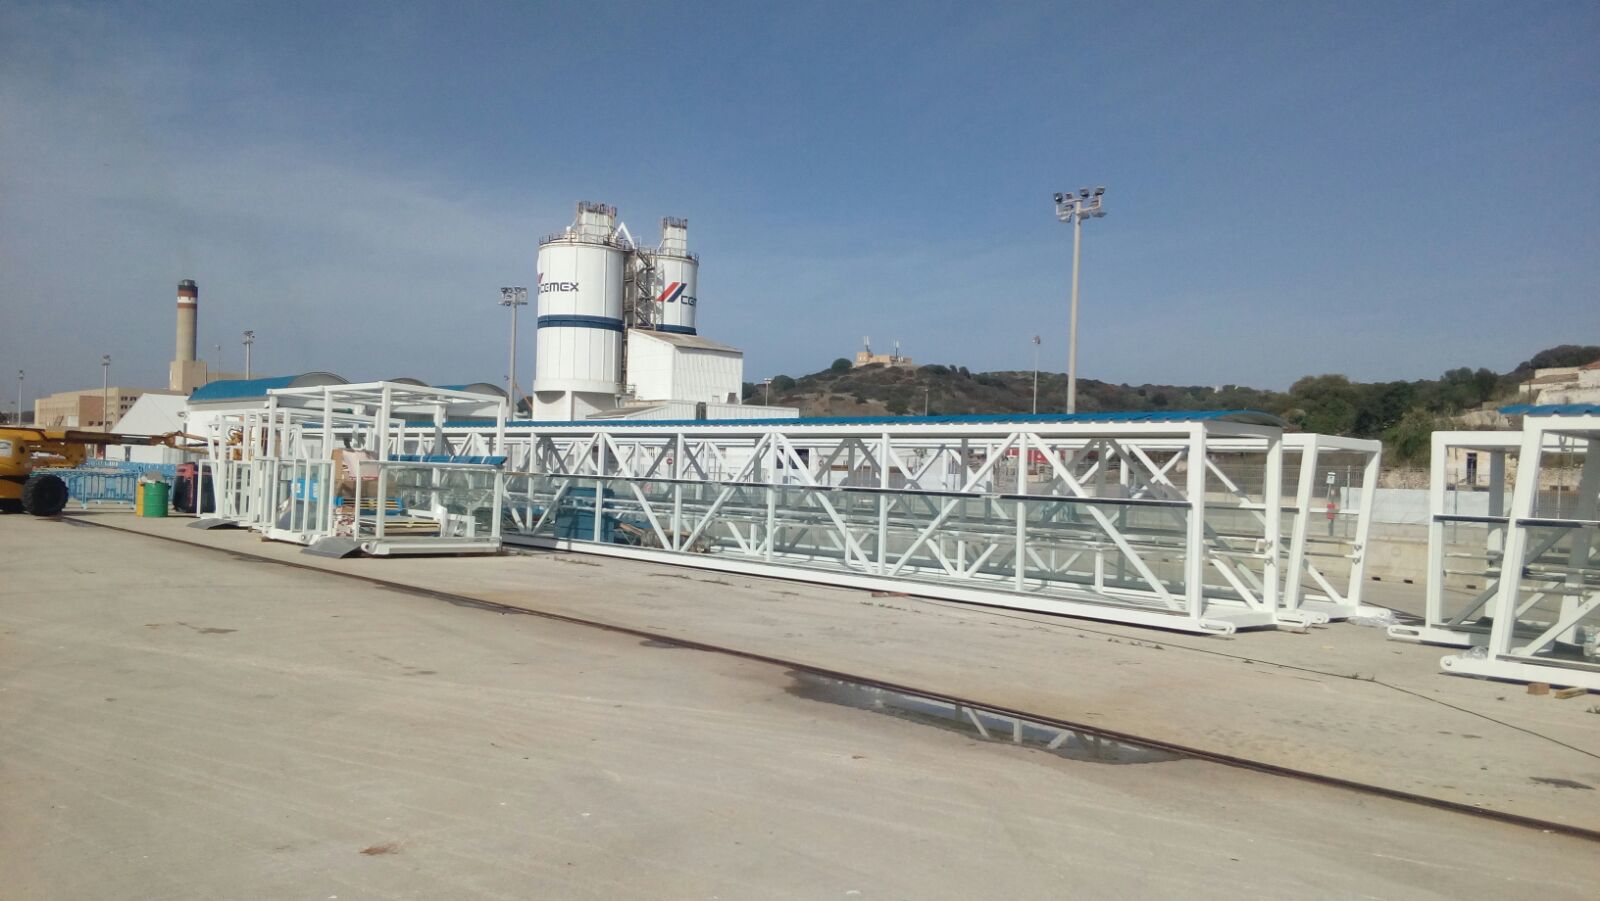 L'APB instal•la una nova passarel•la al port de Maó